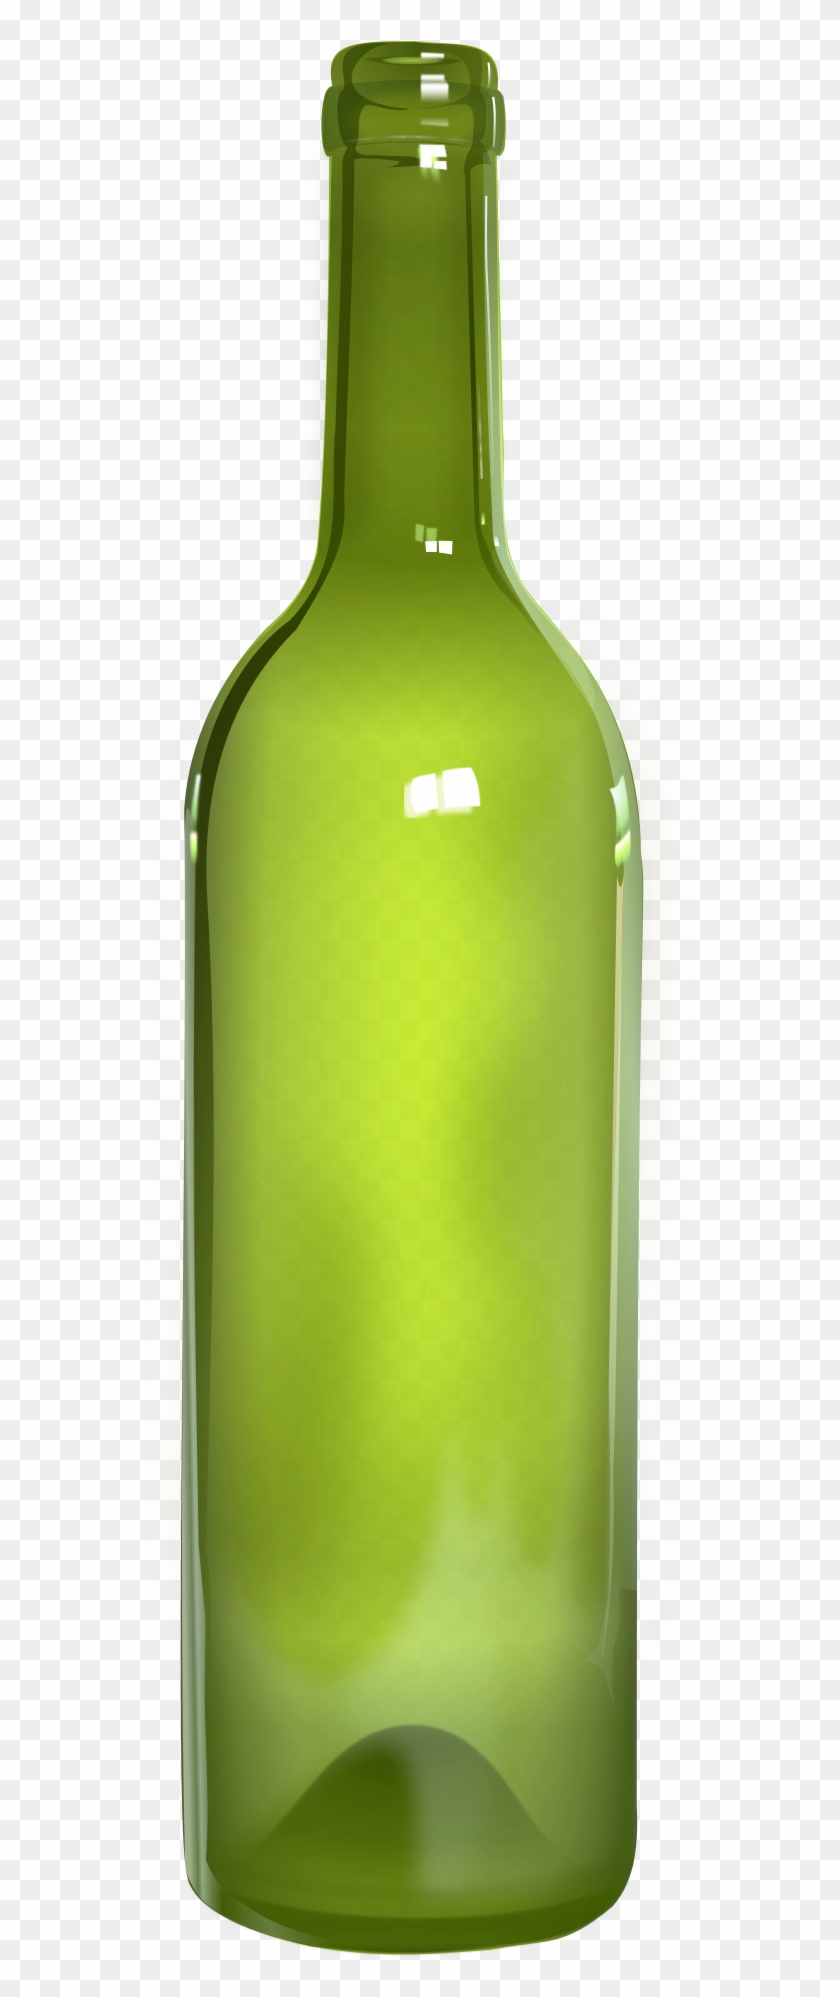 Bottle Transparent Background - Glass Bottle #849065